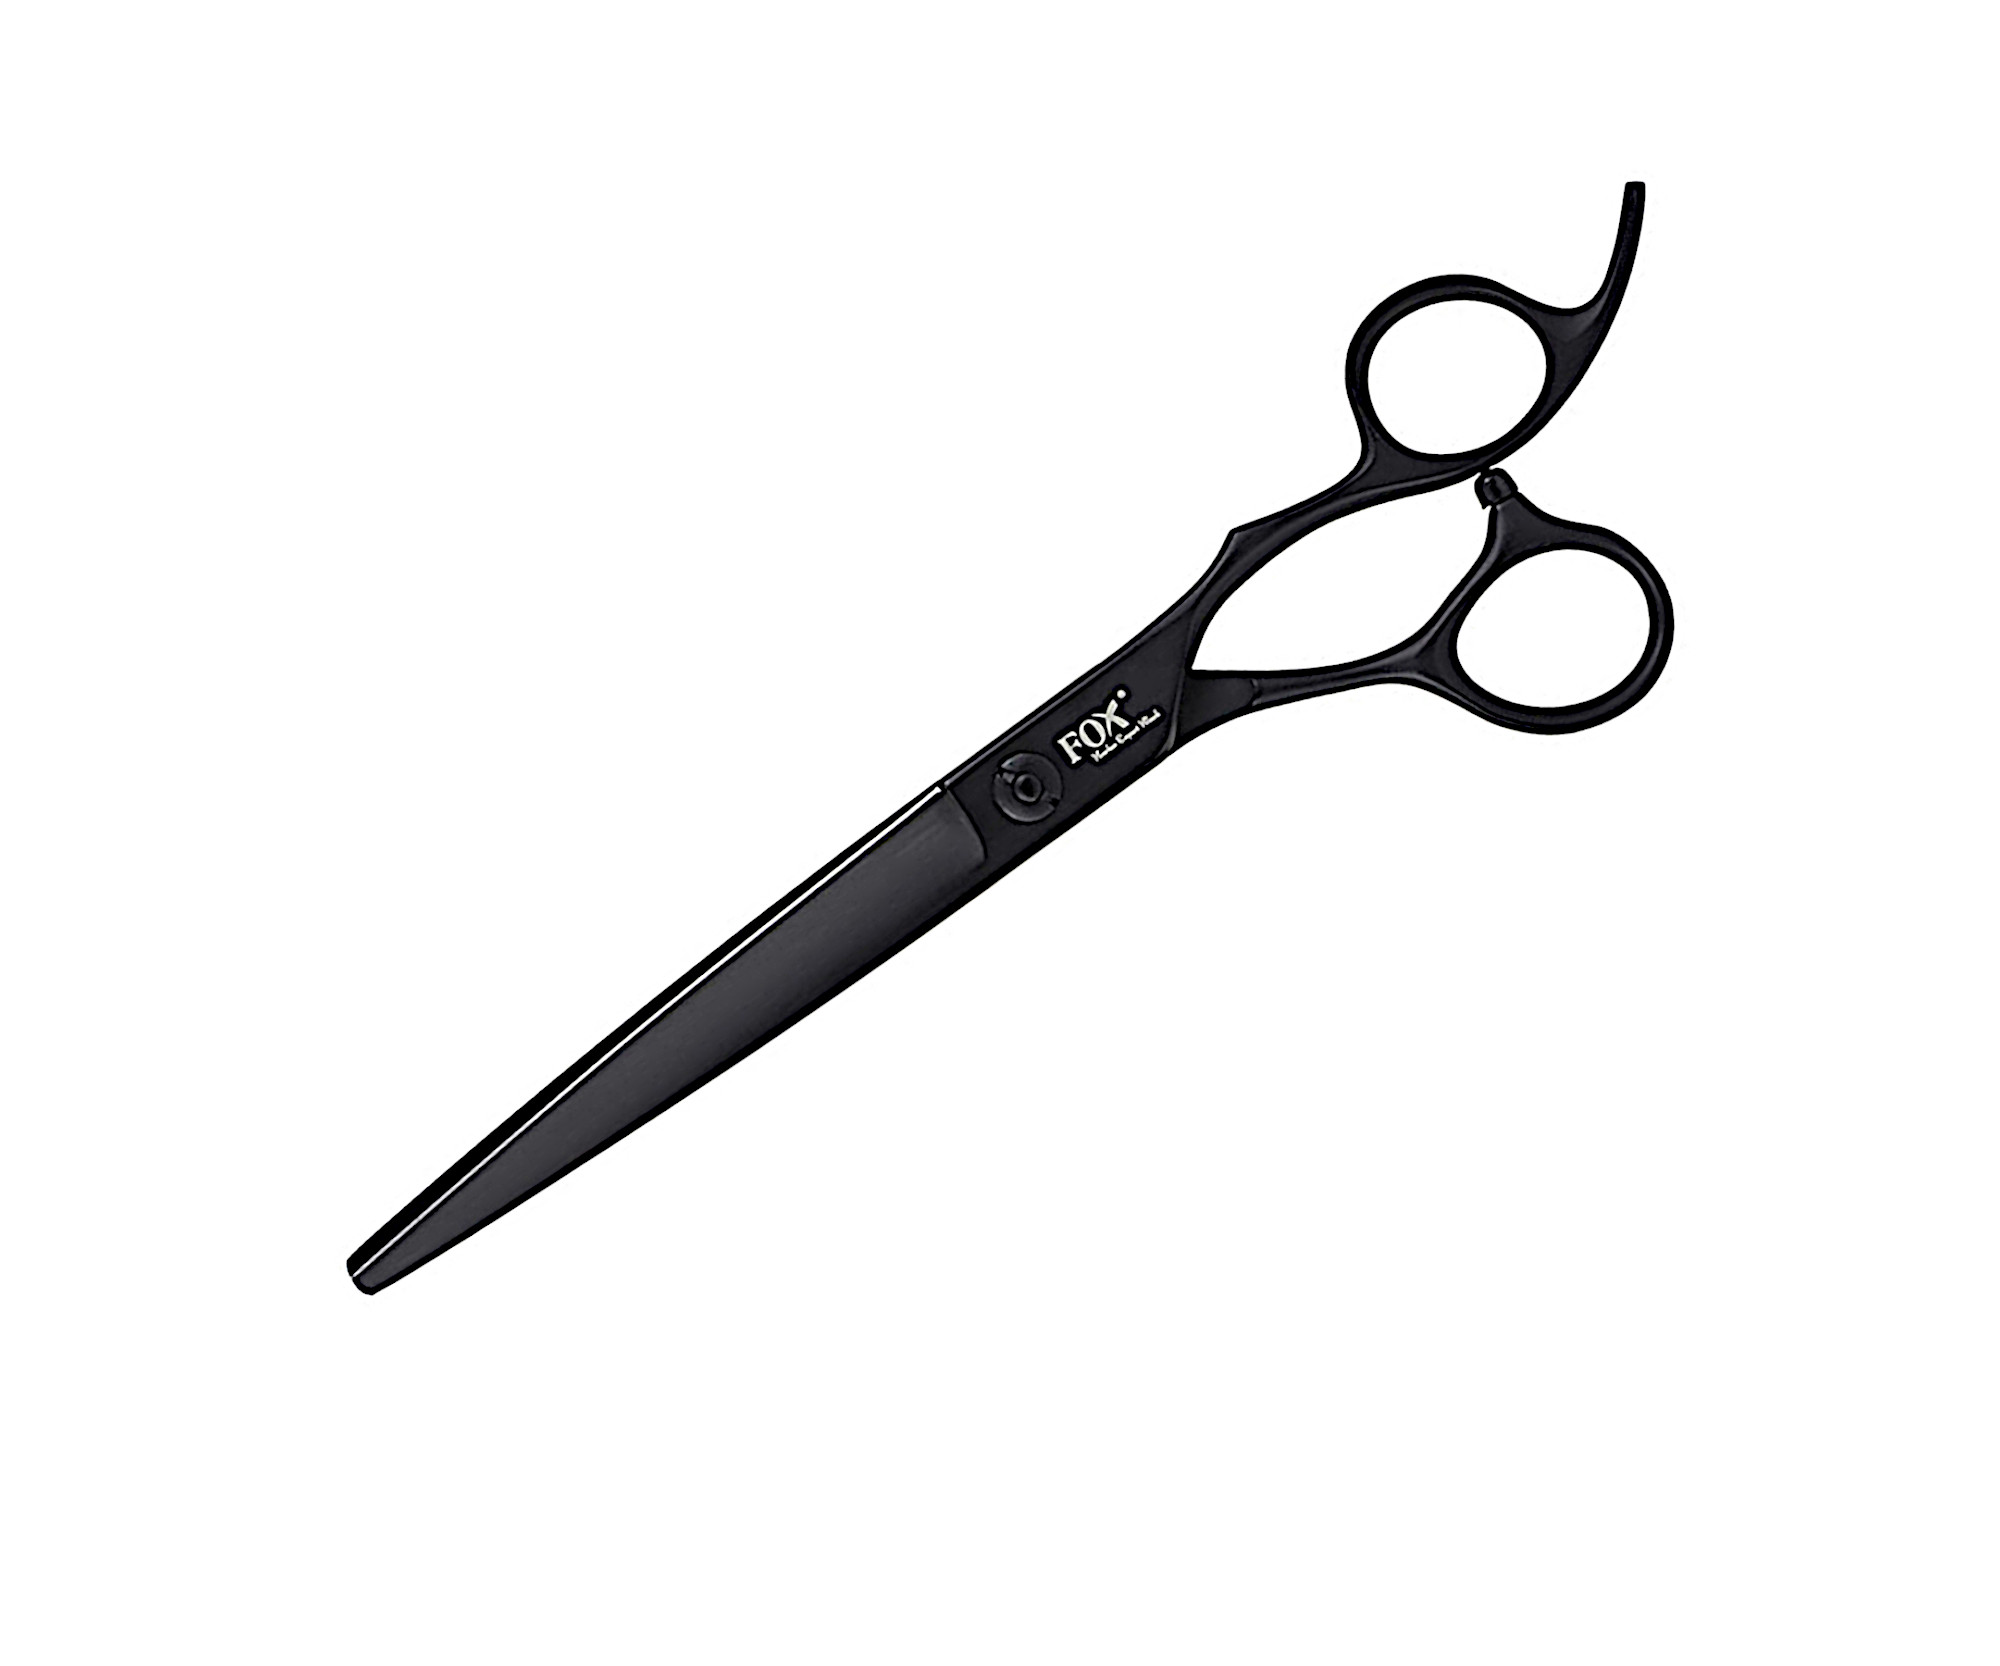 Profesionální kadeřnické nůžky Fox Barber Expert Gunmetal 7" - černé (1509524) + DÁREK ZDARMA